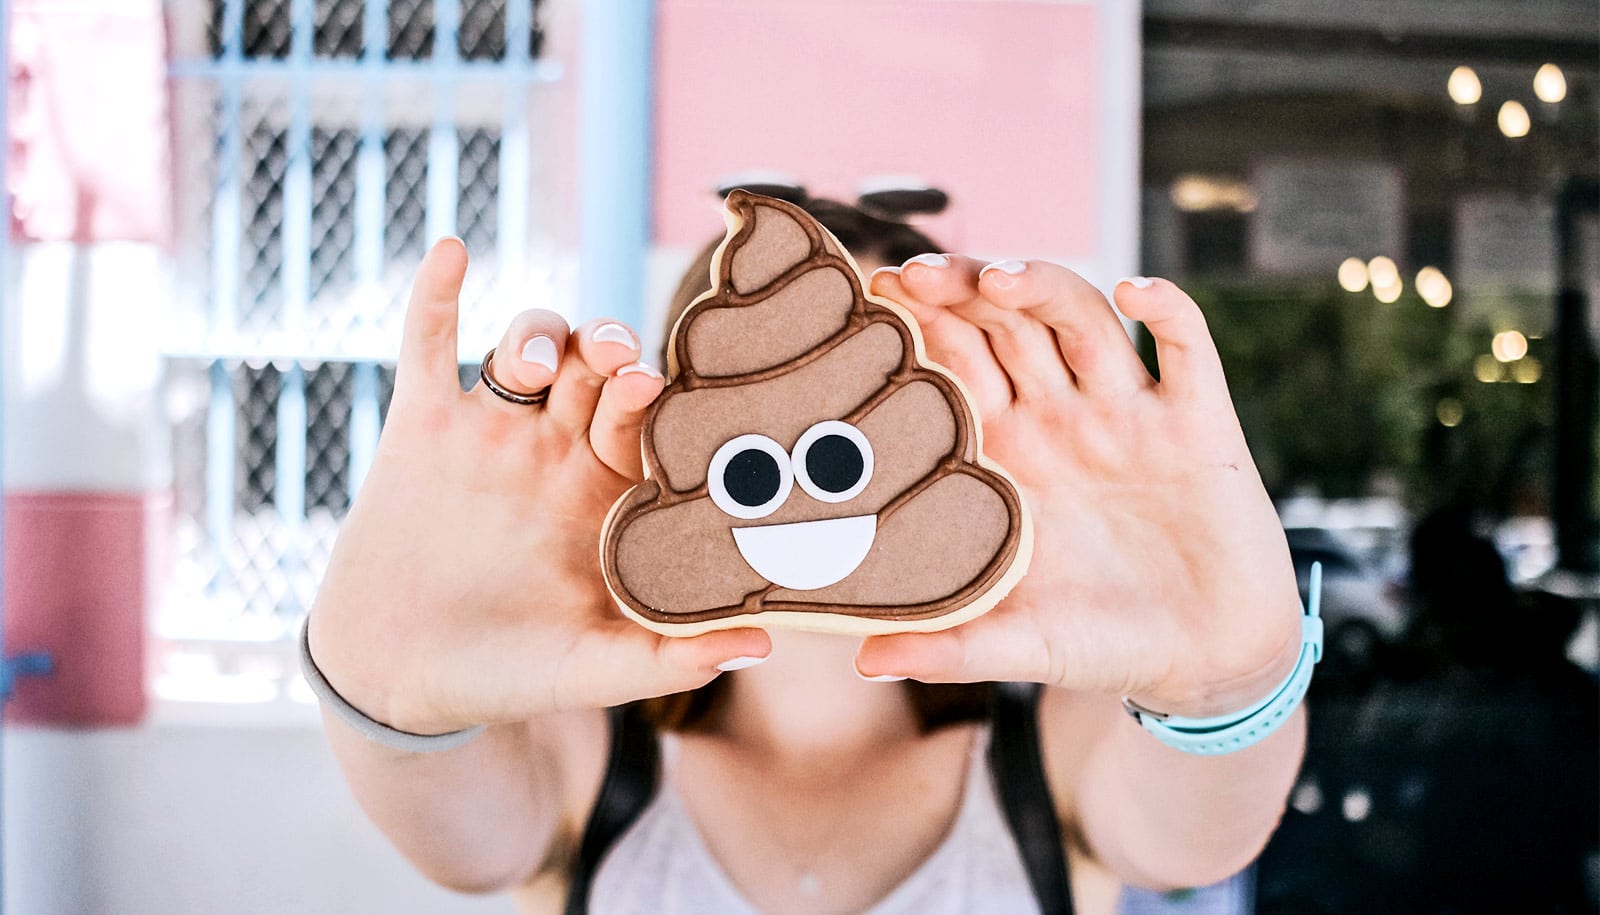 poop-emoji-cookie_1600.jpg